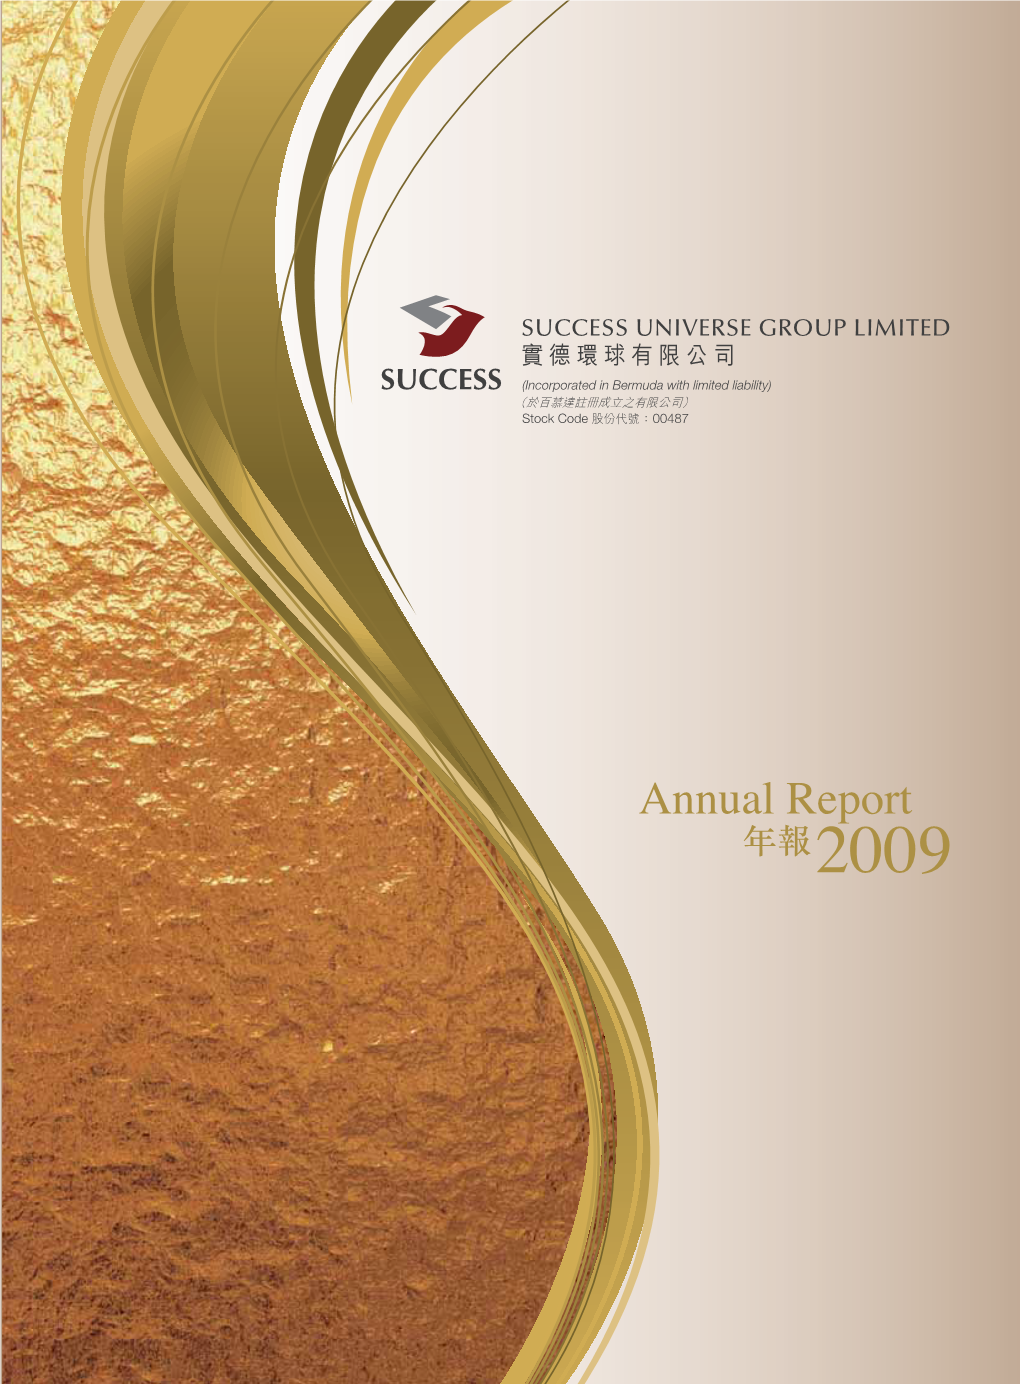 Annual Report 年報 2009 Annual Report 2009 年報